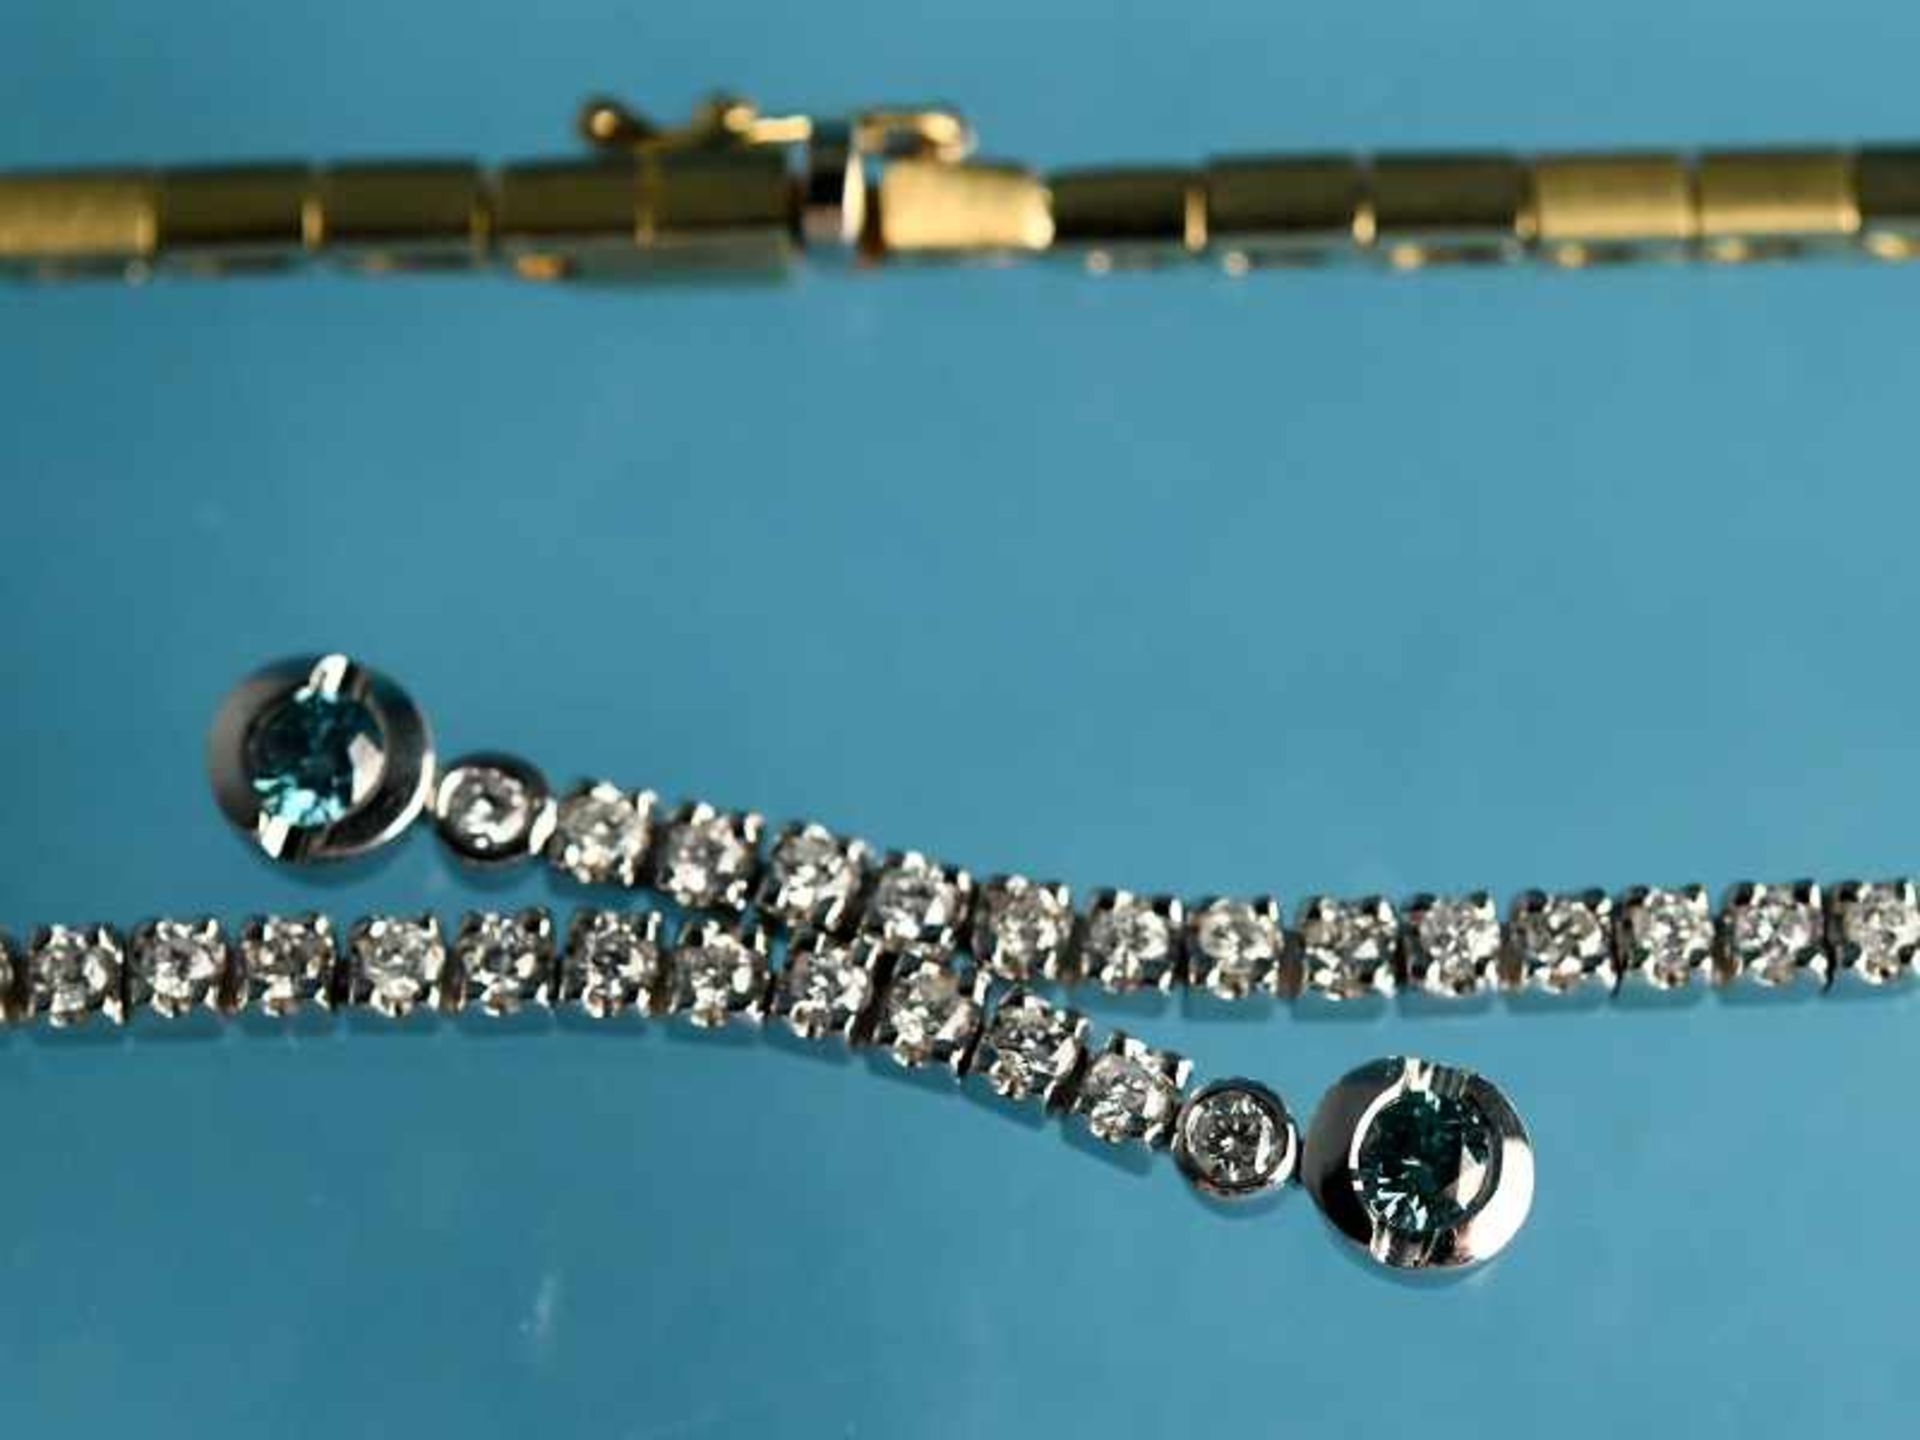 Collier und Armband mit 4 farbigen und farblosen Brillanten, zusammen ca. 4,09 ct, 90-er Jahre. - Image 8 of 9